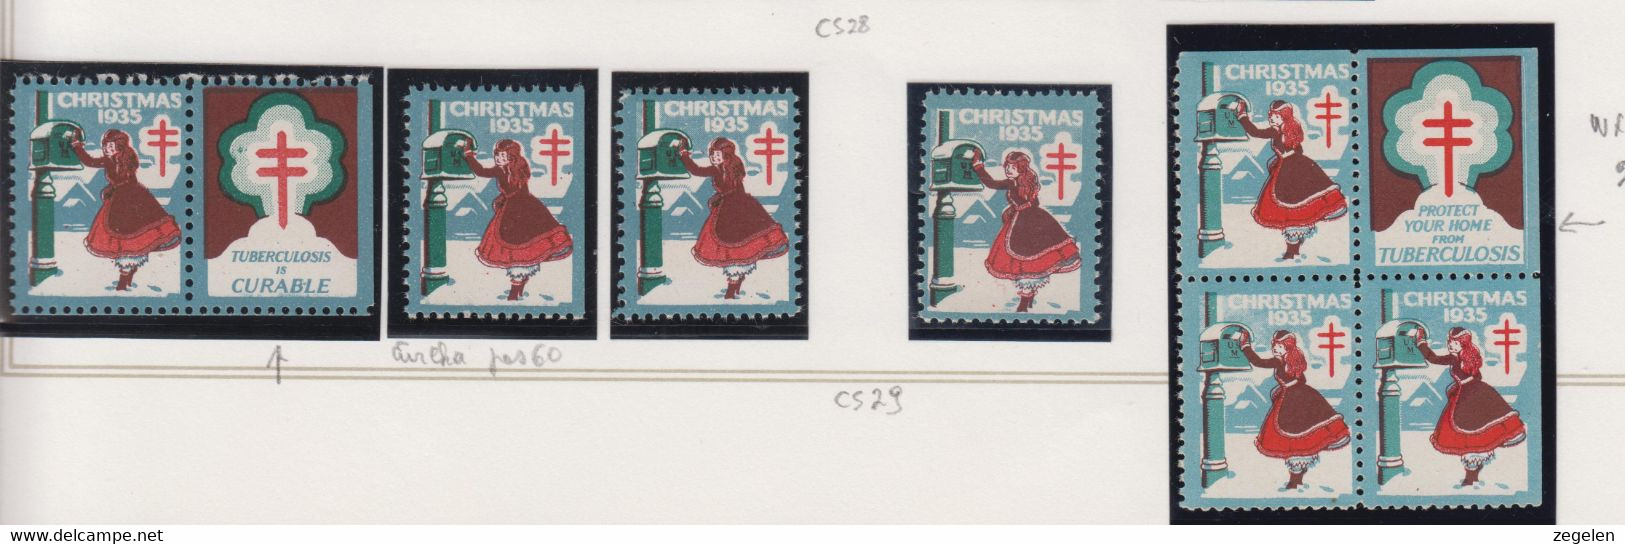 Verenigde Staten Kerstvignet Scott-cat. Jaar 1935 CS29 WX76/77 1 Printermark/drukkenmerk + 2 Versch.vignetten - Unclassified